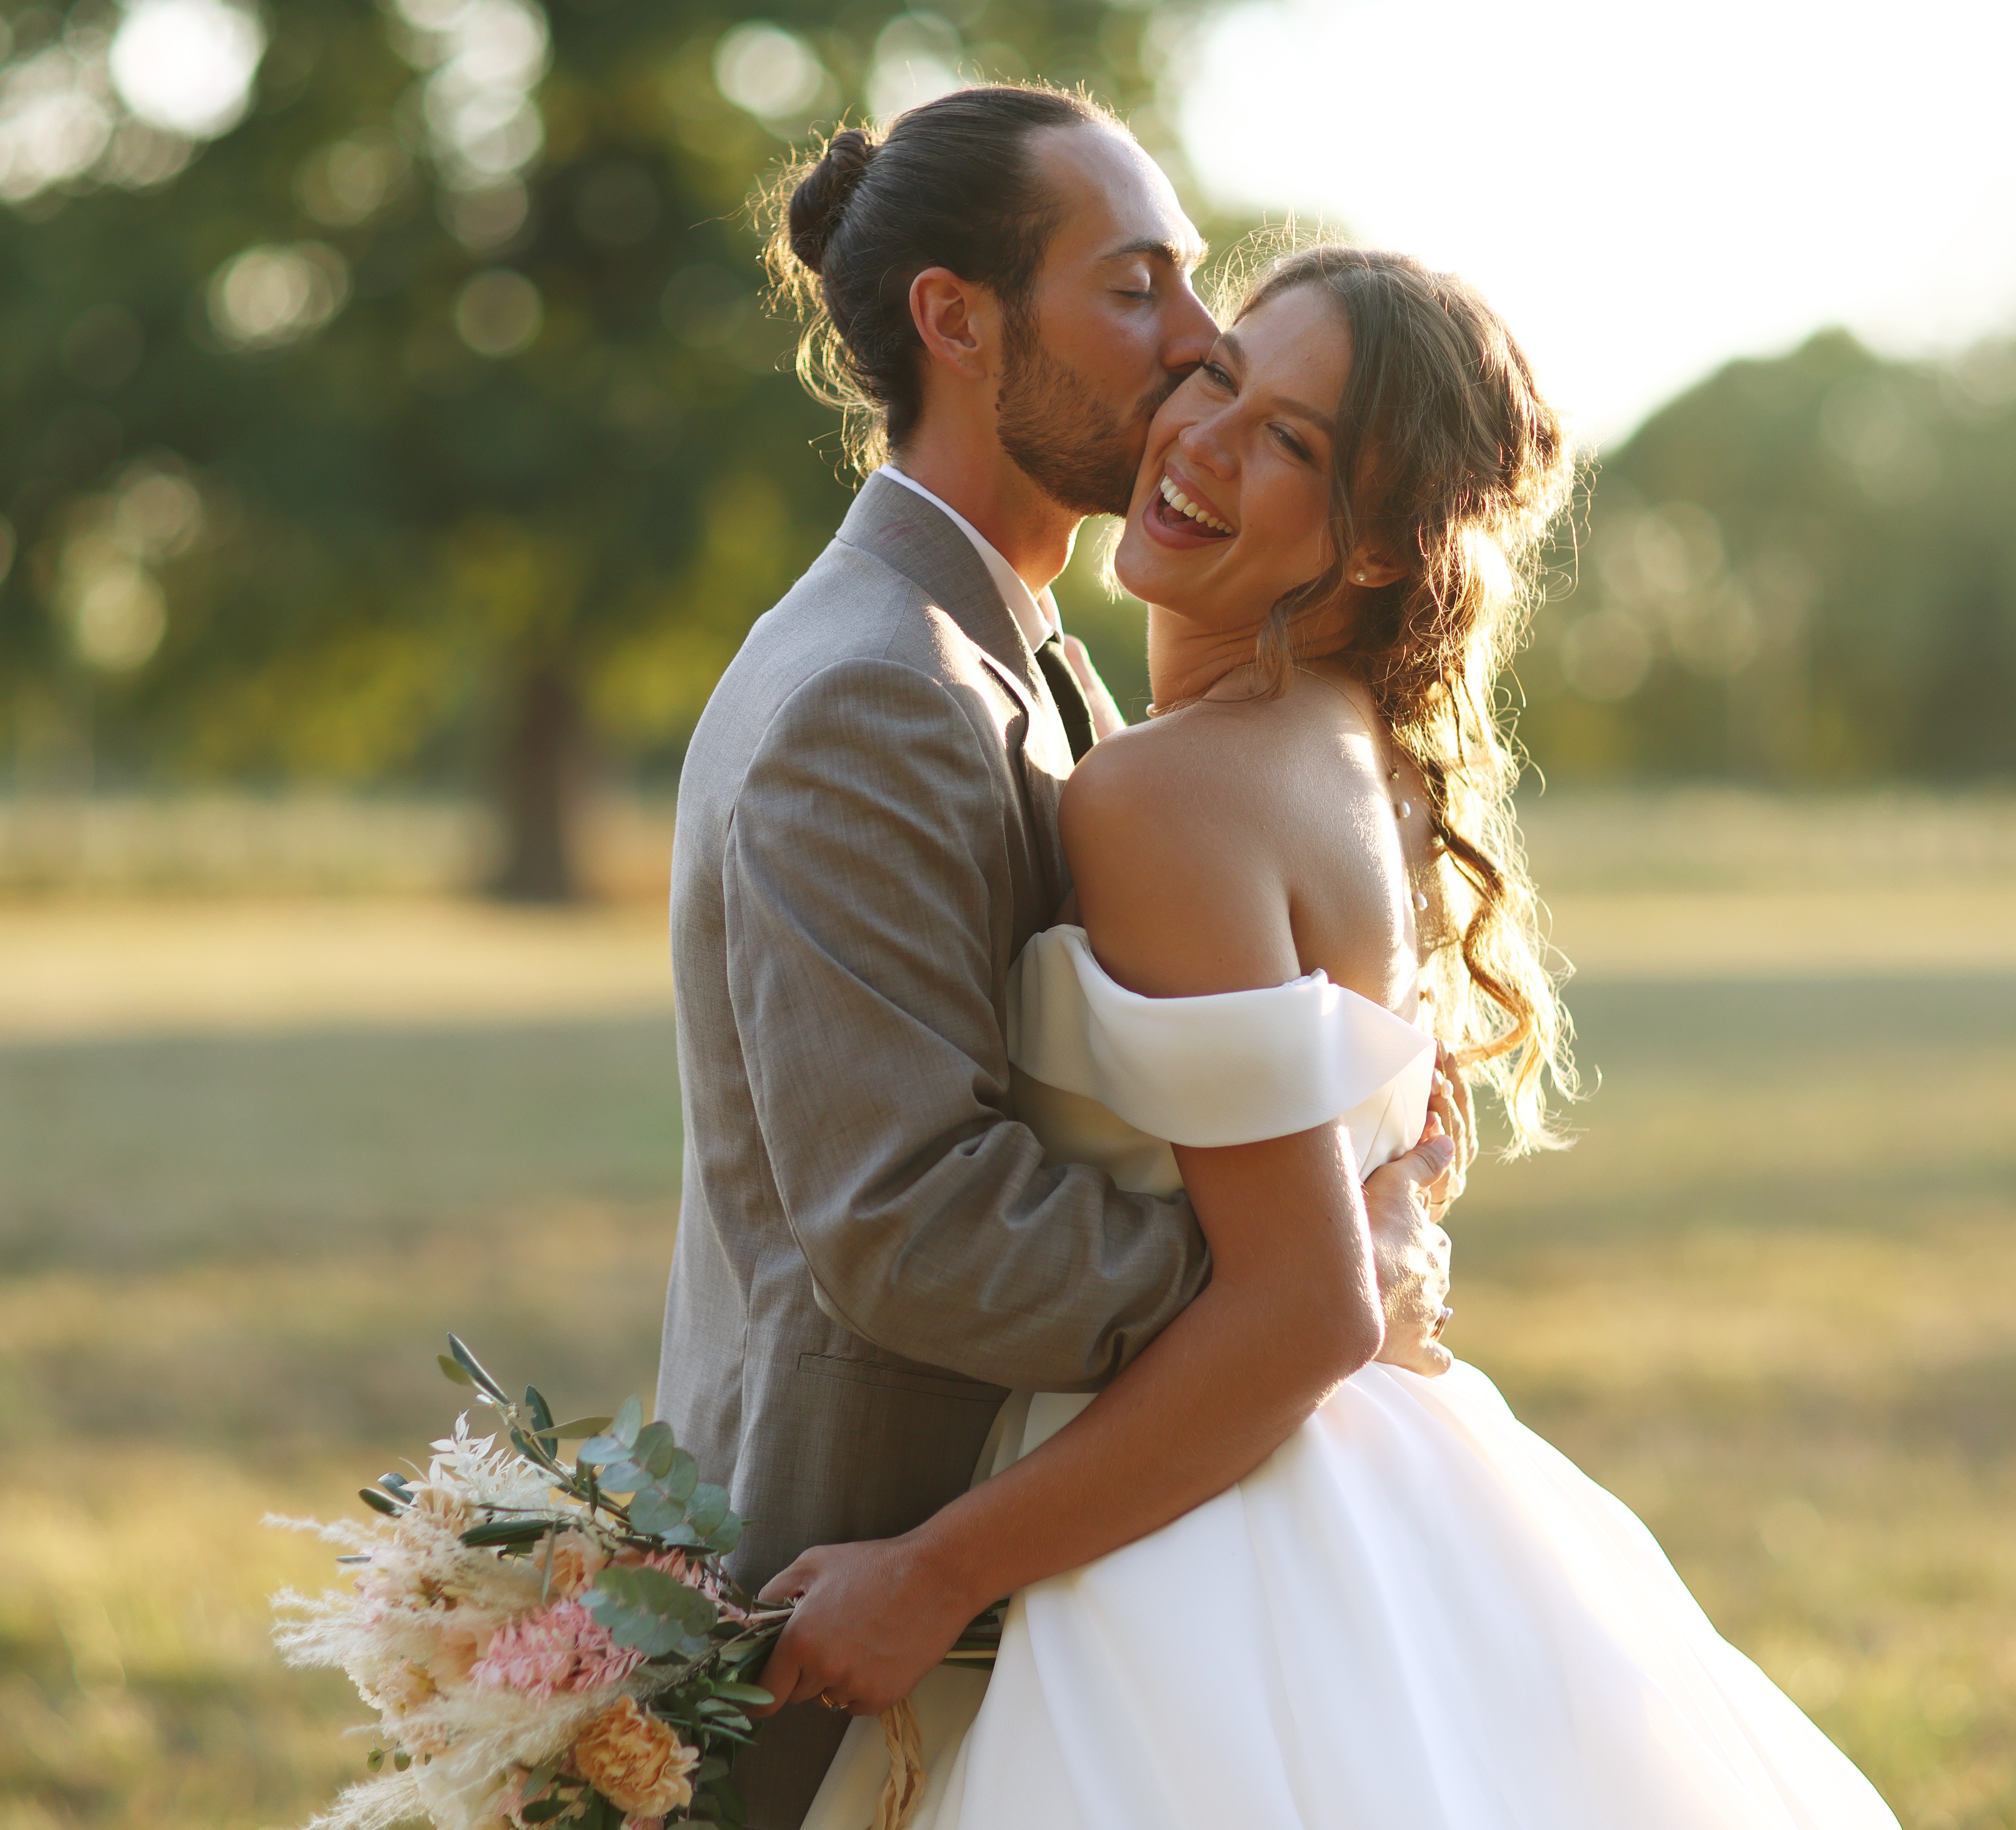 Les jeunes mariés | Source : Getty Images